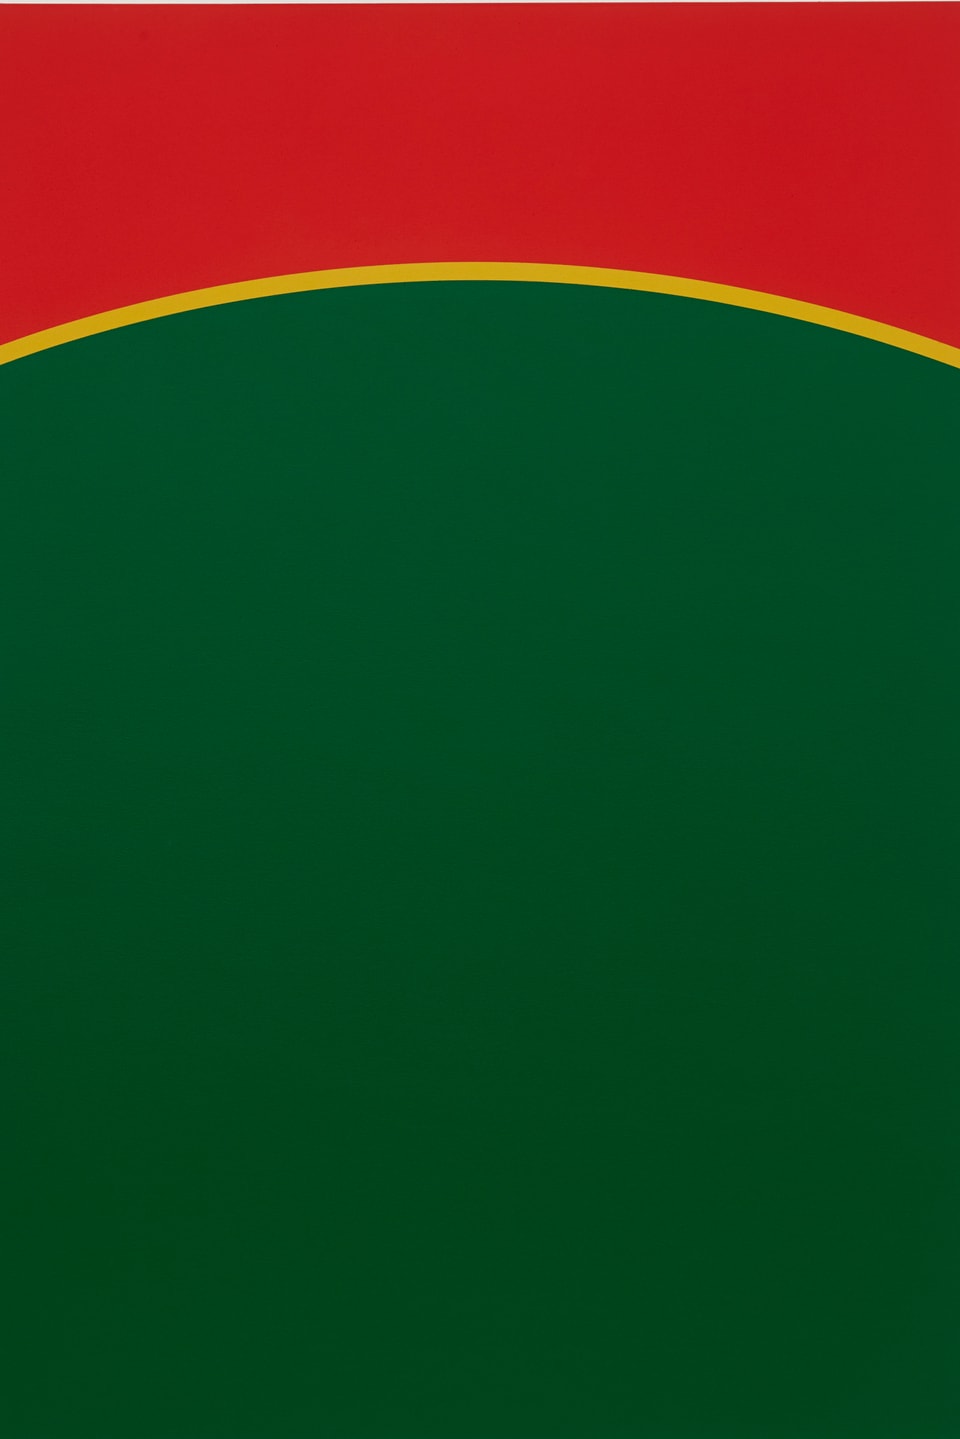 Unten grün (ca. 2/3 des Bildes), wie ein Hügel oben rund, dann gelber Strich, oben rot. 